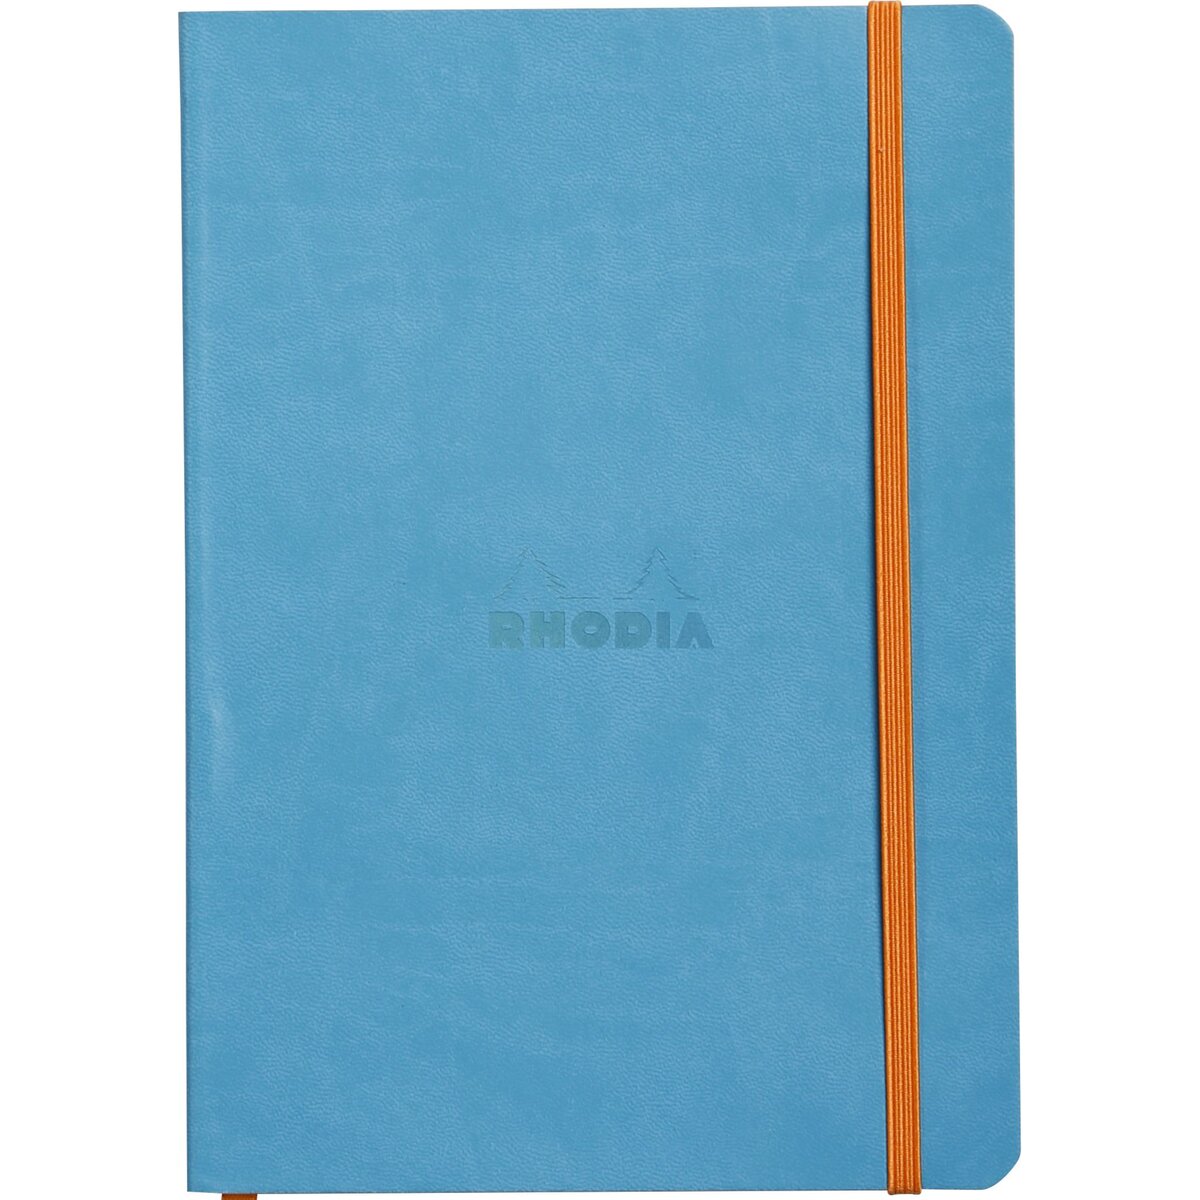 CLAIREFONTAINE Carnet soft cover à élastique 14.8x21cm 160 pages-turquoise